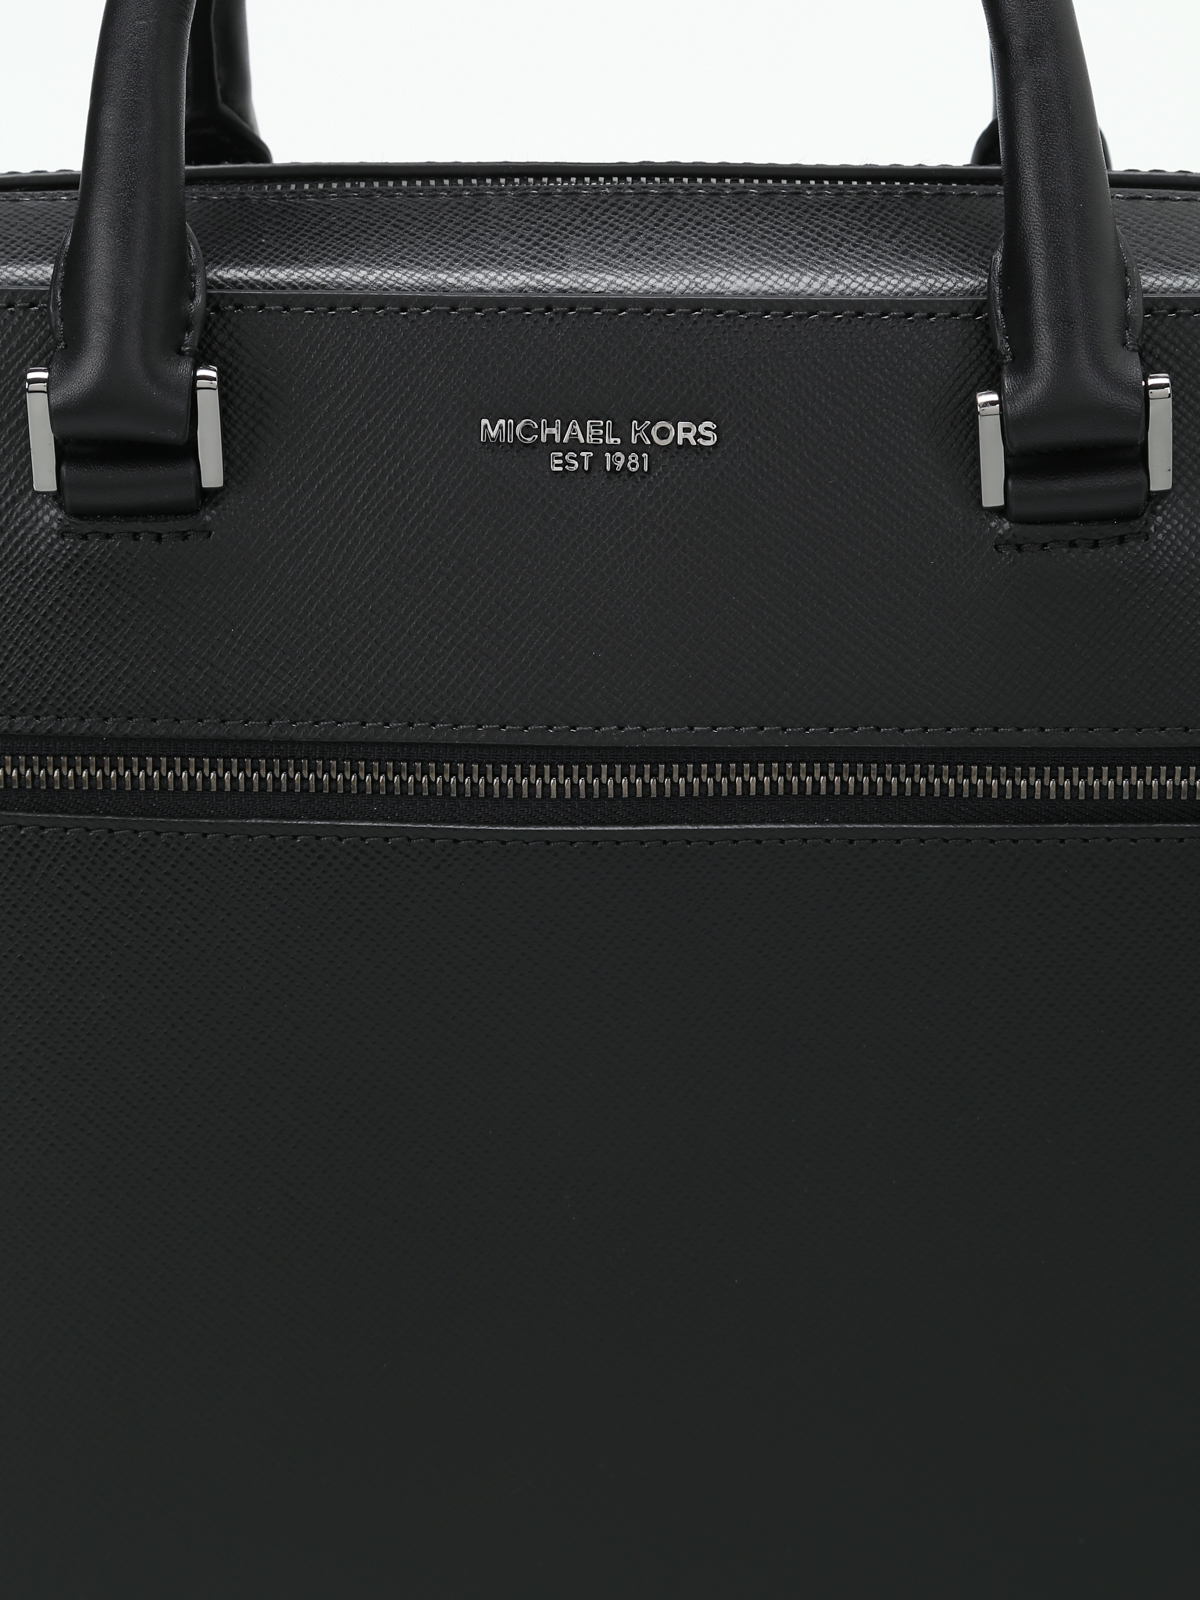 michael michael kors harrison briefcase